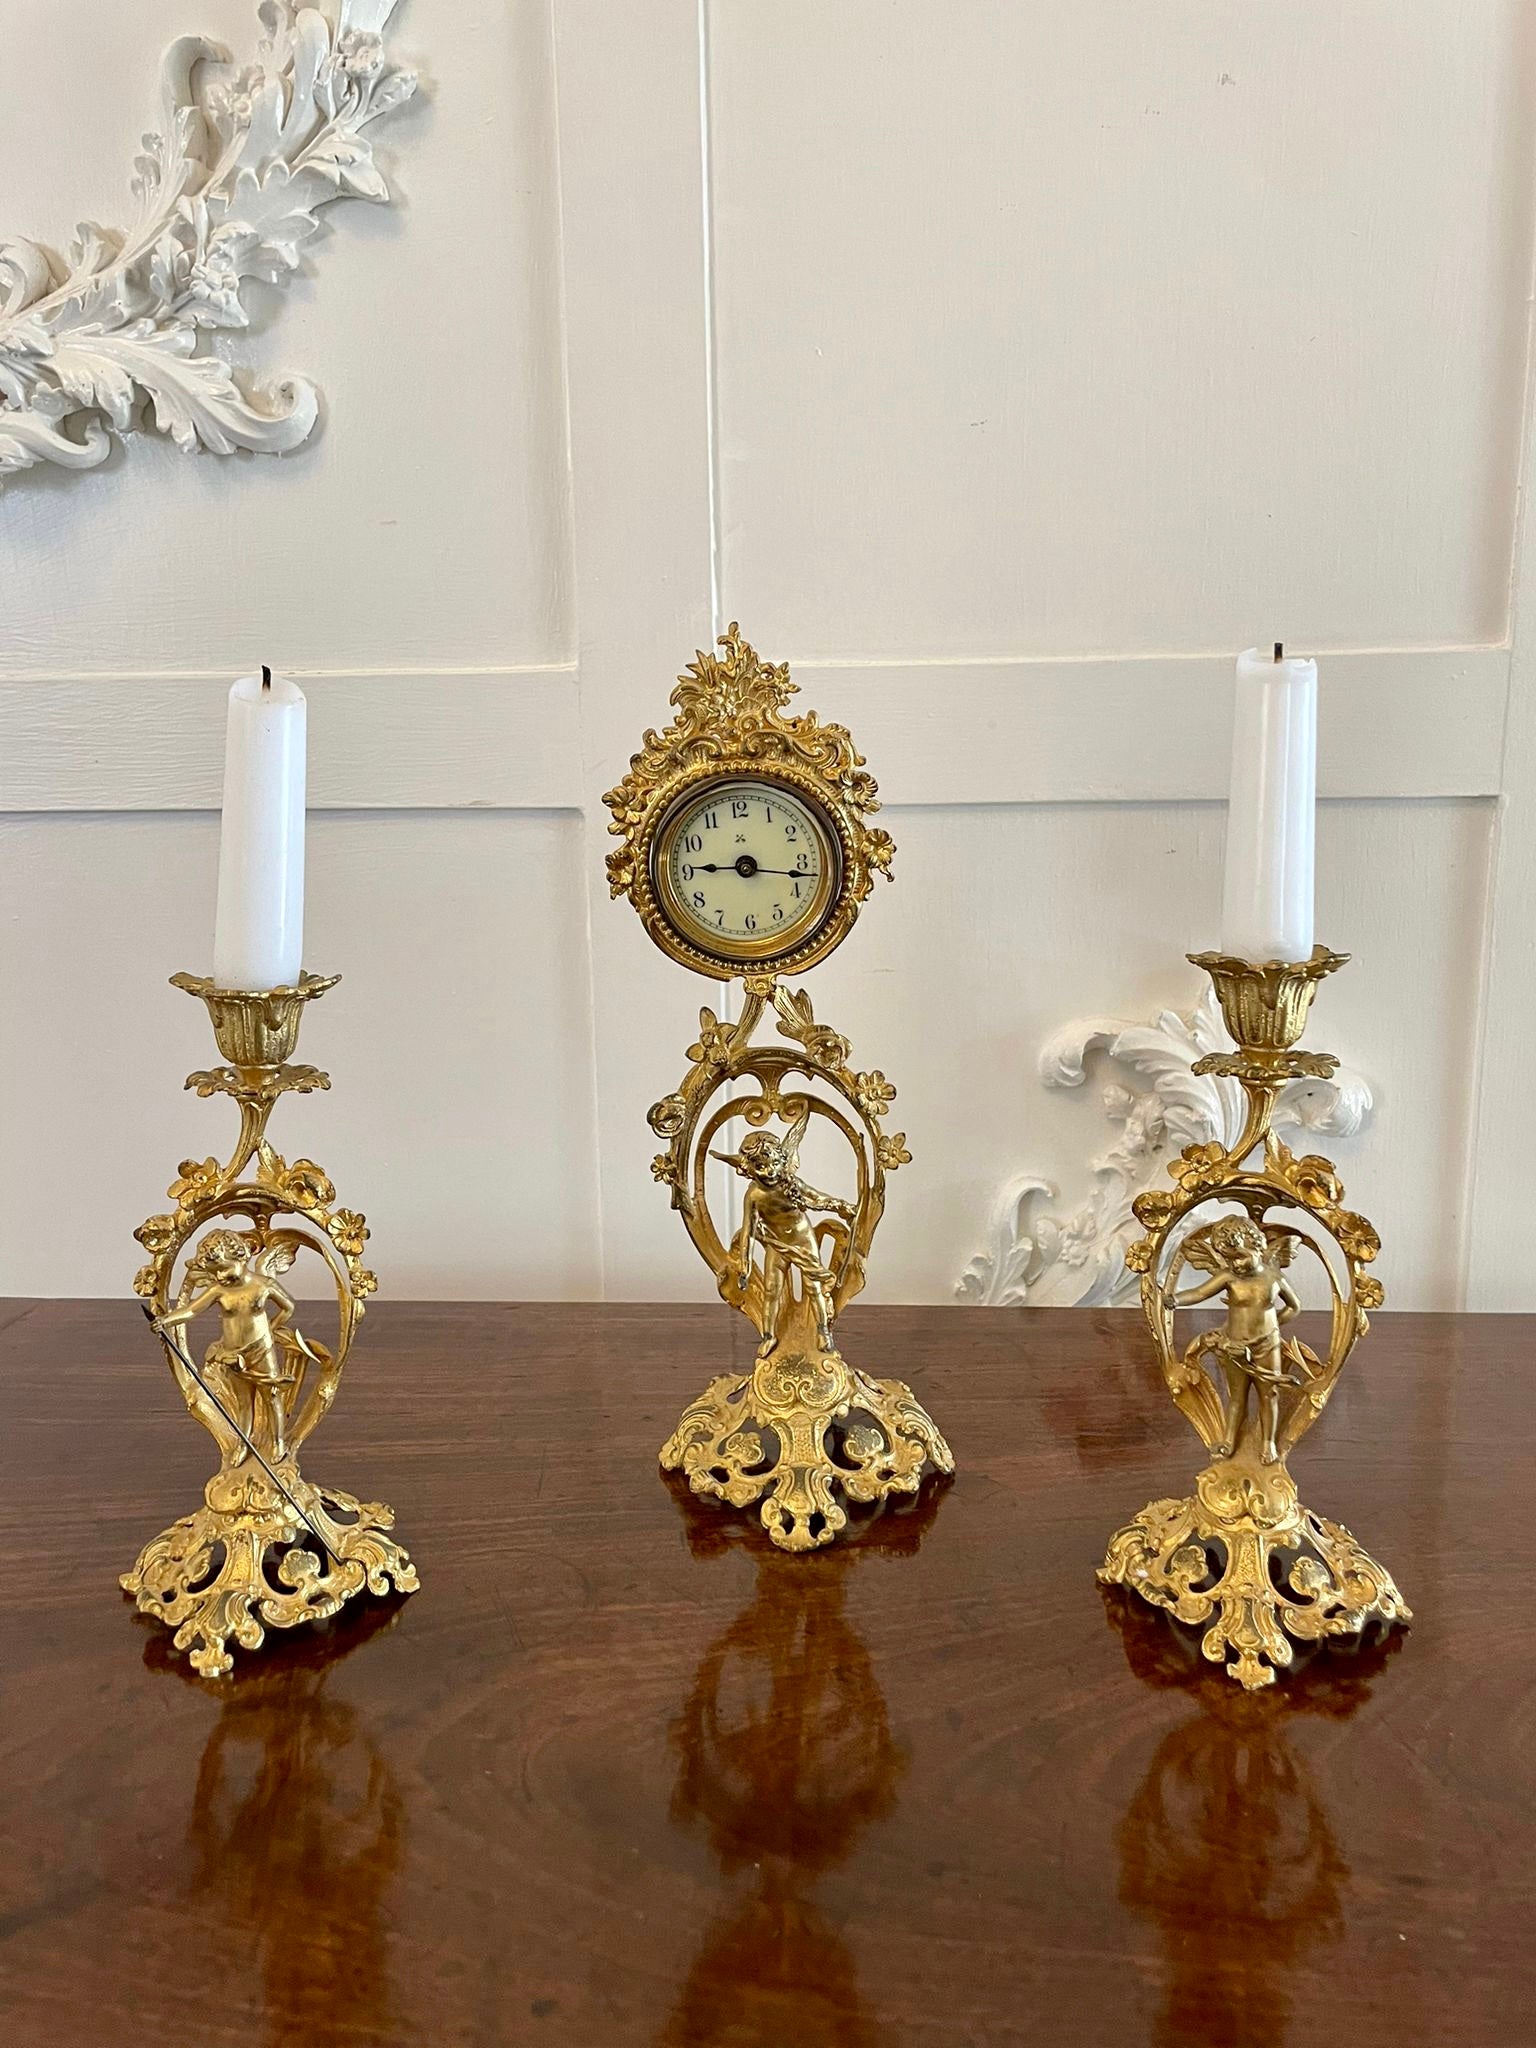 
Feine antike viktorianische Französisch verzierten vergoldeten Uhr mit reizvollen verzierten Amoretten und Blumen. Die Uhr ist ein 8-Tage-Uhrwerk mit originalen Zeigern und einem Amor auf dem Sockel.

Ein reizvolles Stück in gutem